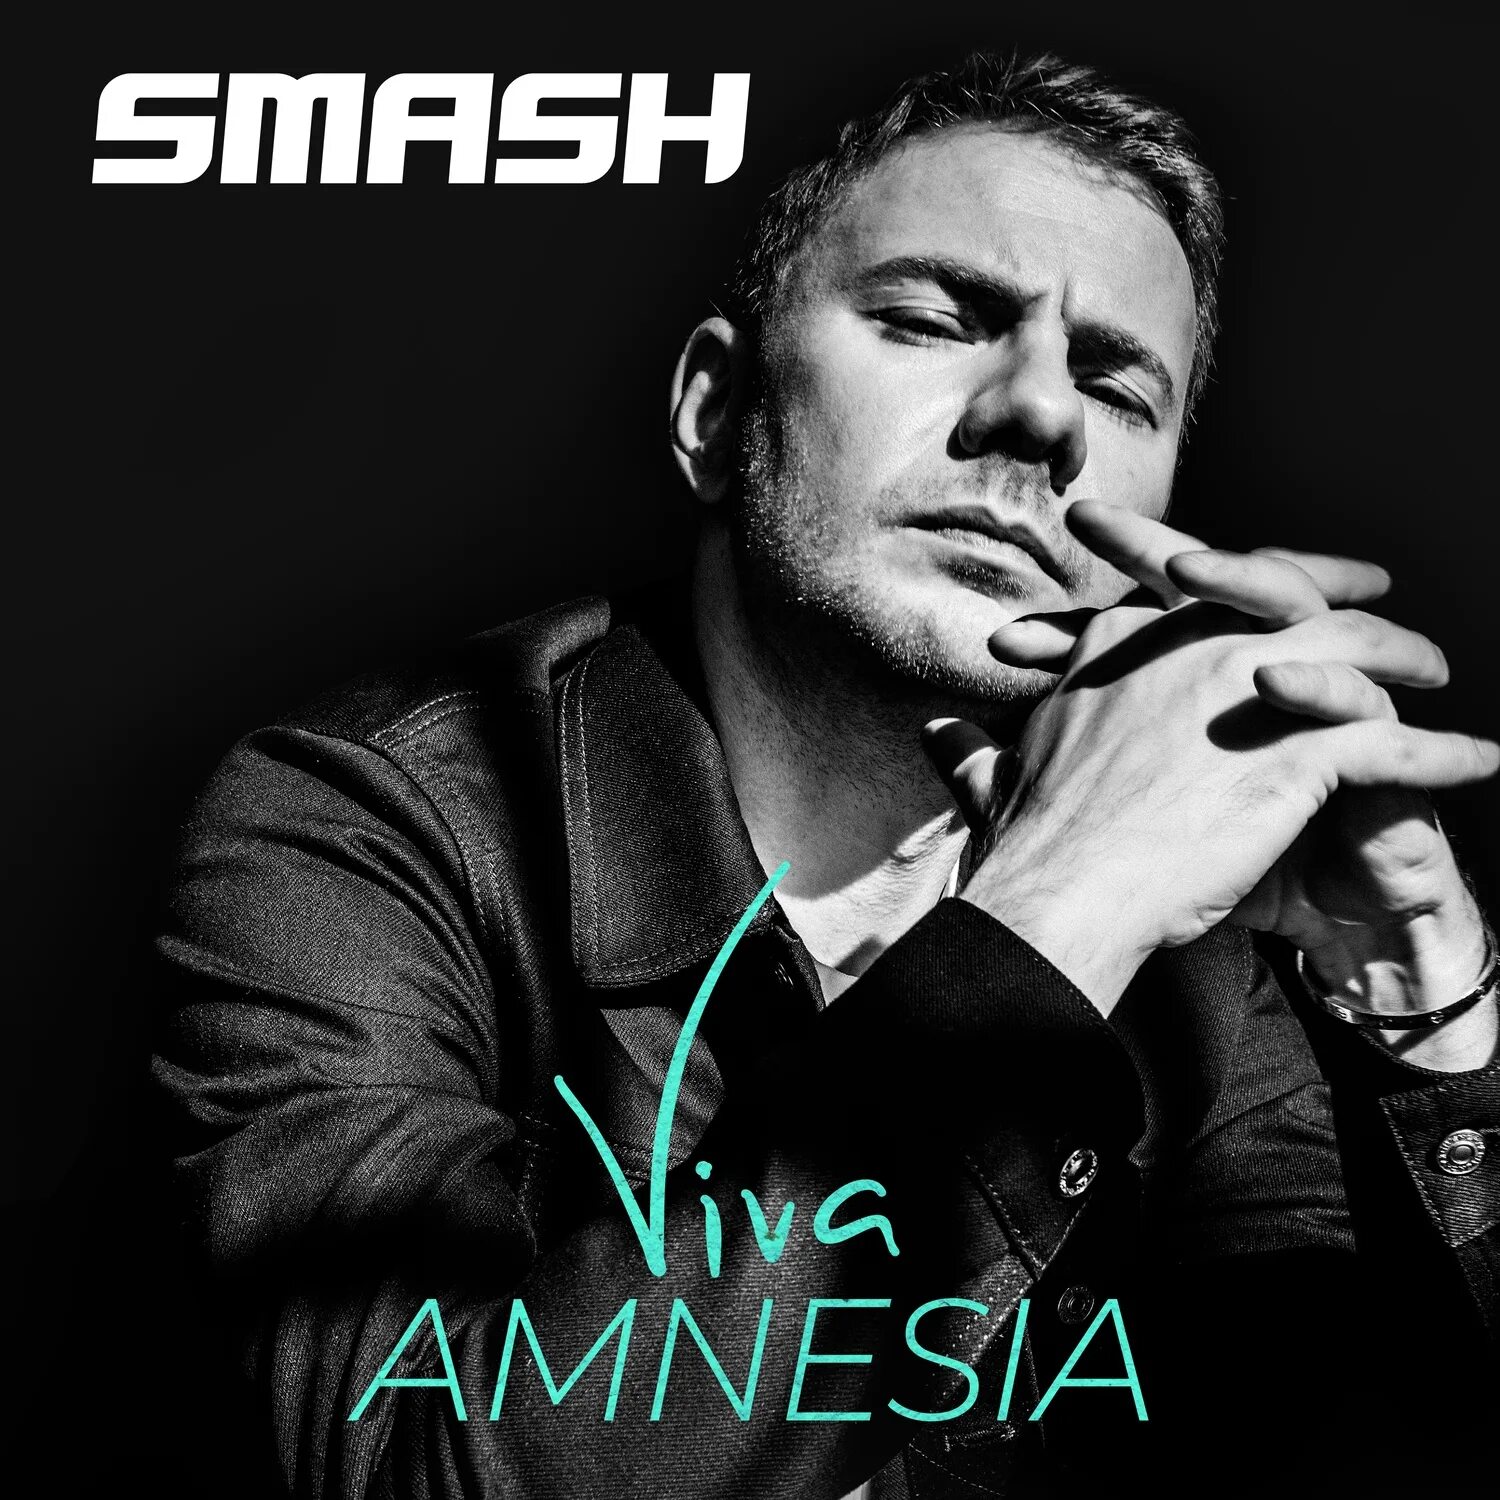 Песни дж смеша. DJ Smash. Smash певец. DJ Smash Viva Amnesia. DJ Smash фото.